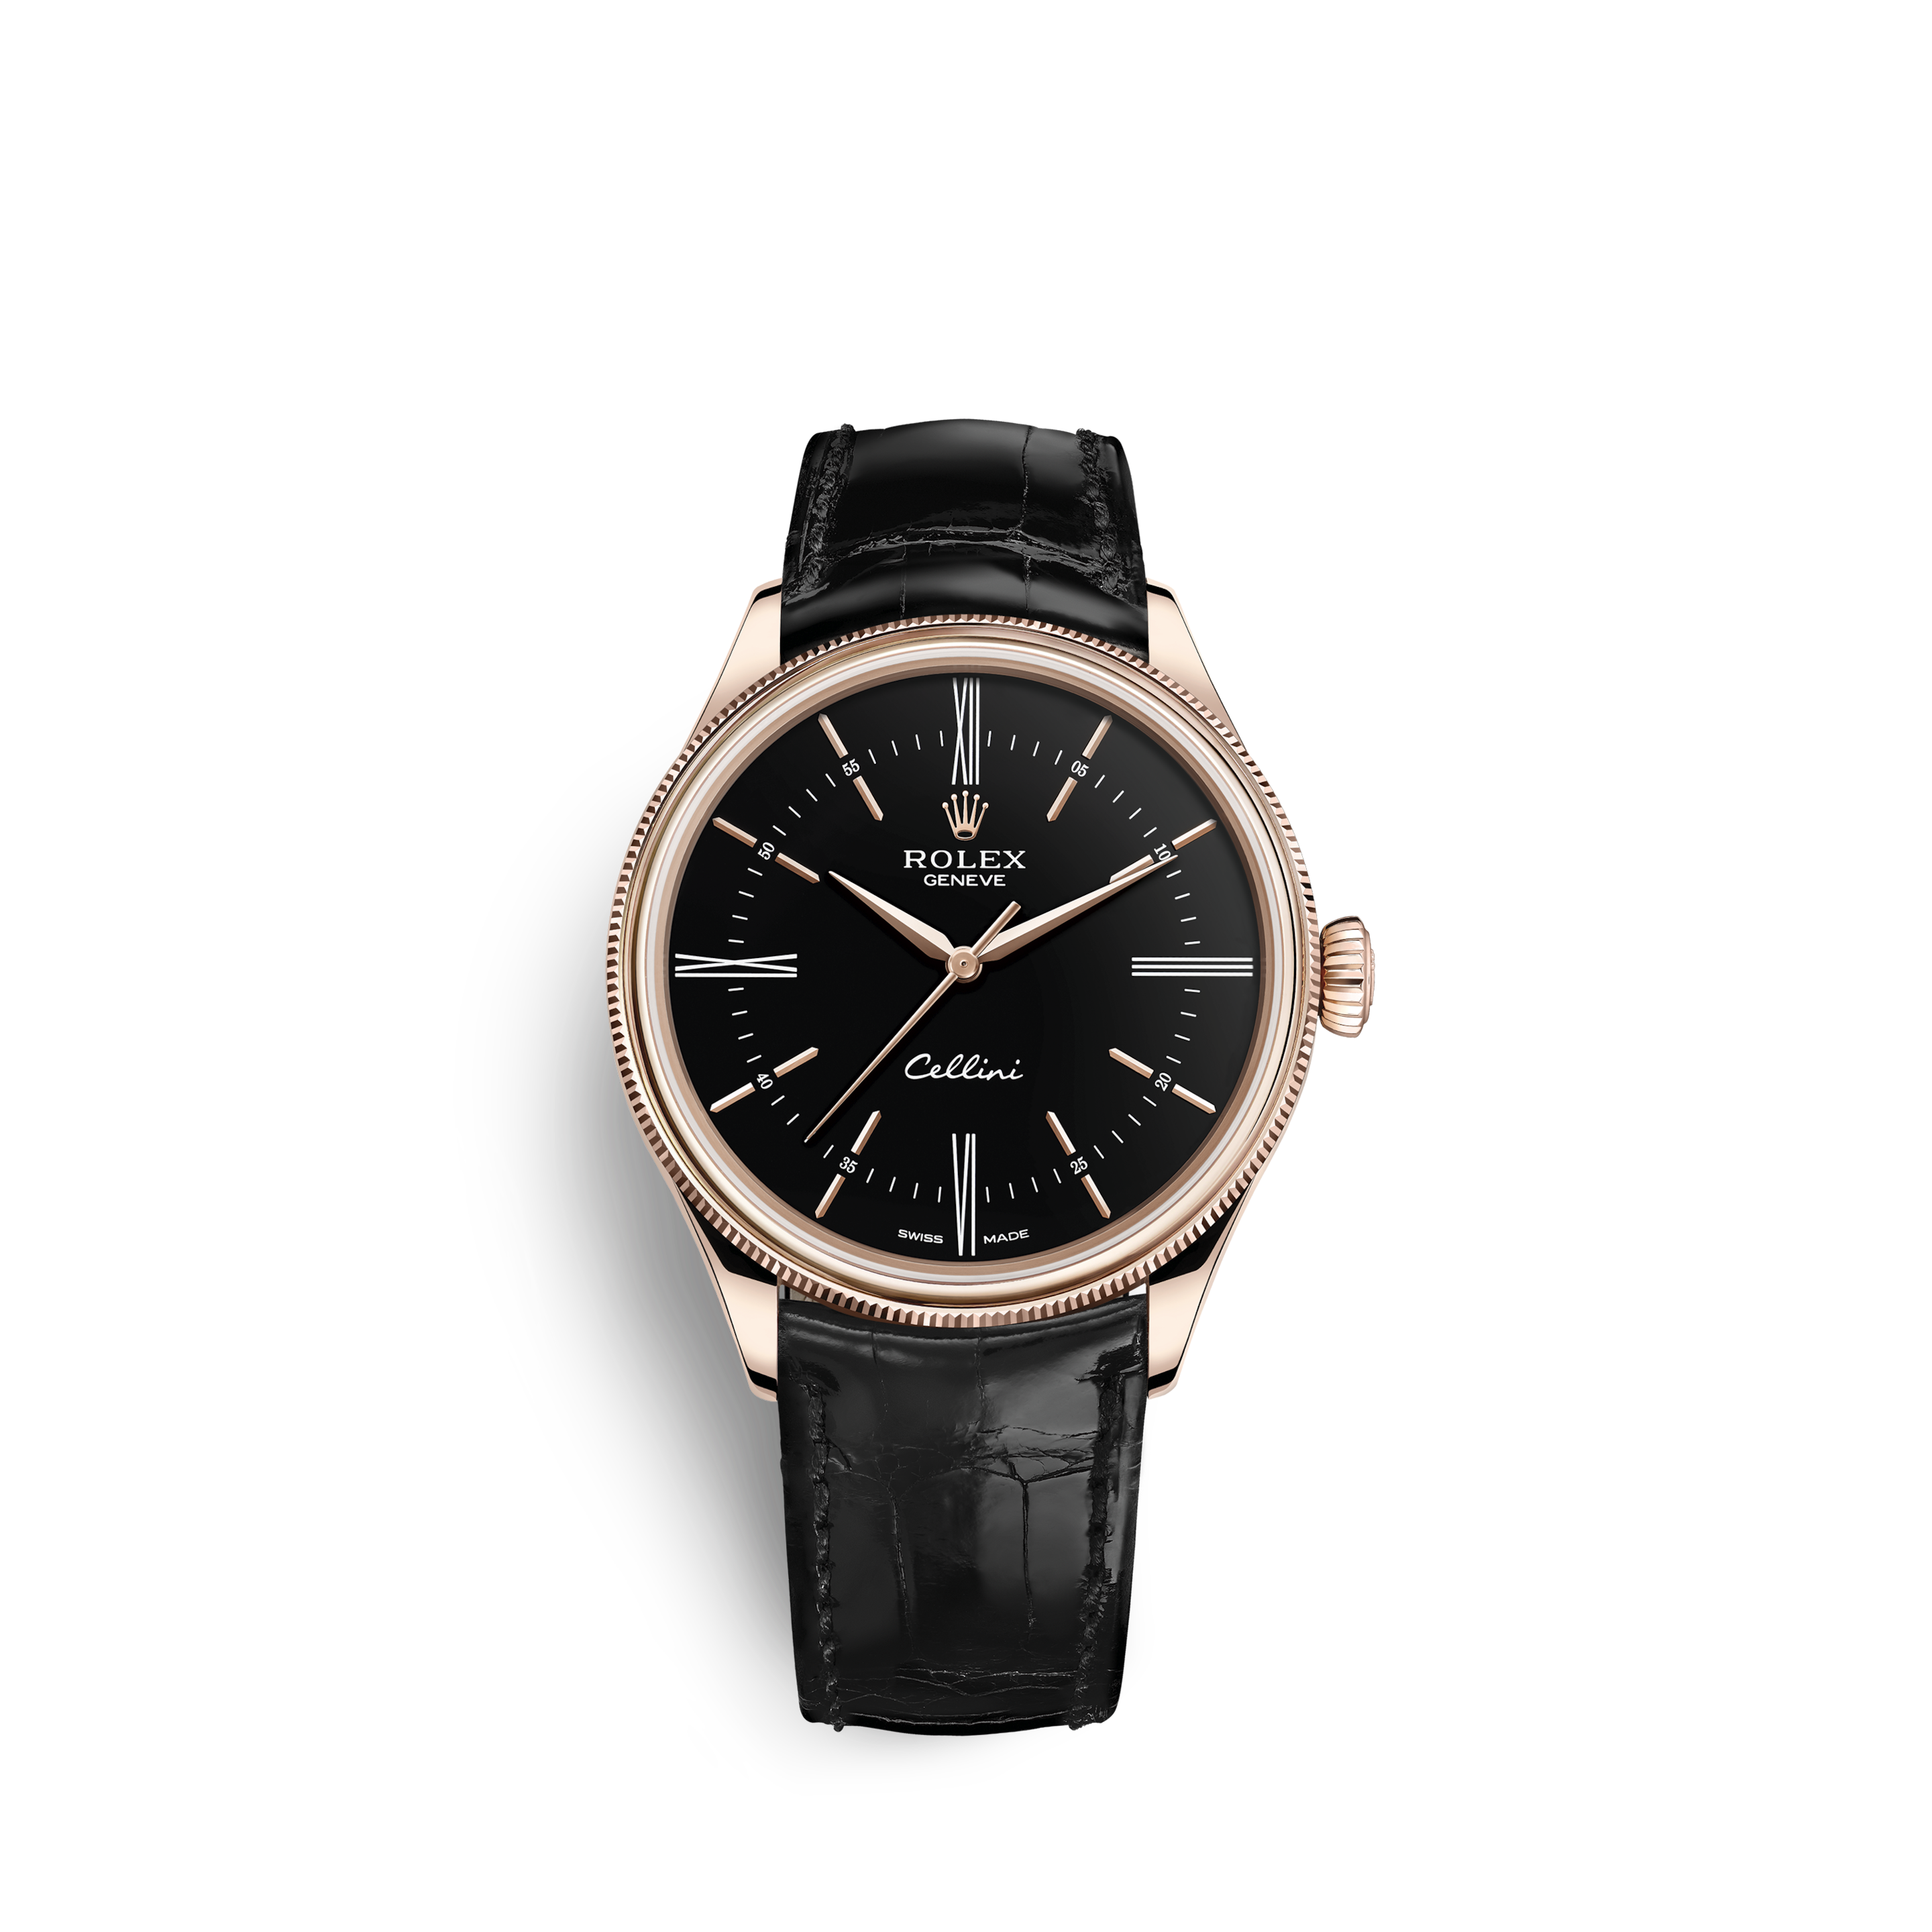 Rolex 116515LN Osyter Perpetual Cosmograph Daytona 40mmRolex President Day-Date Men's 18k Rose Gold Watch 118205